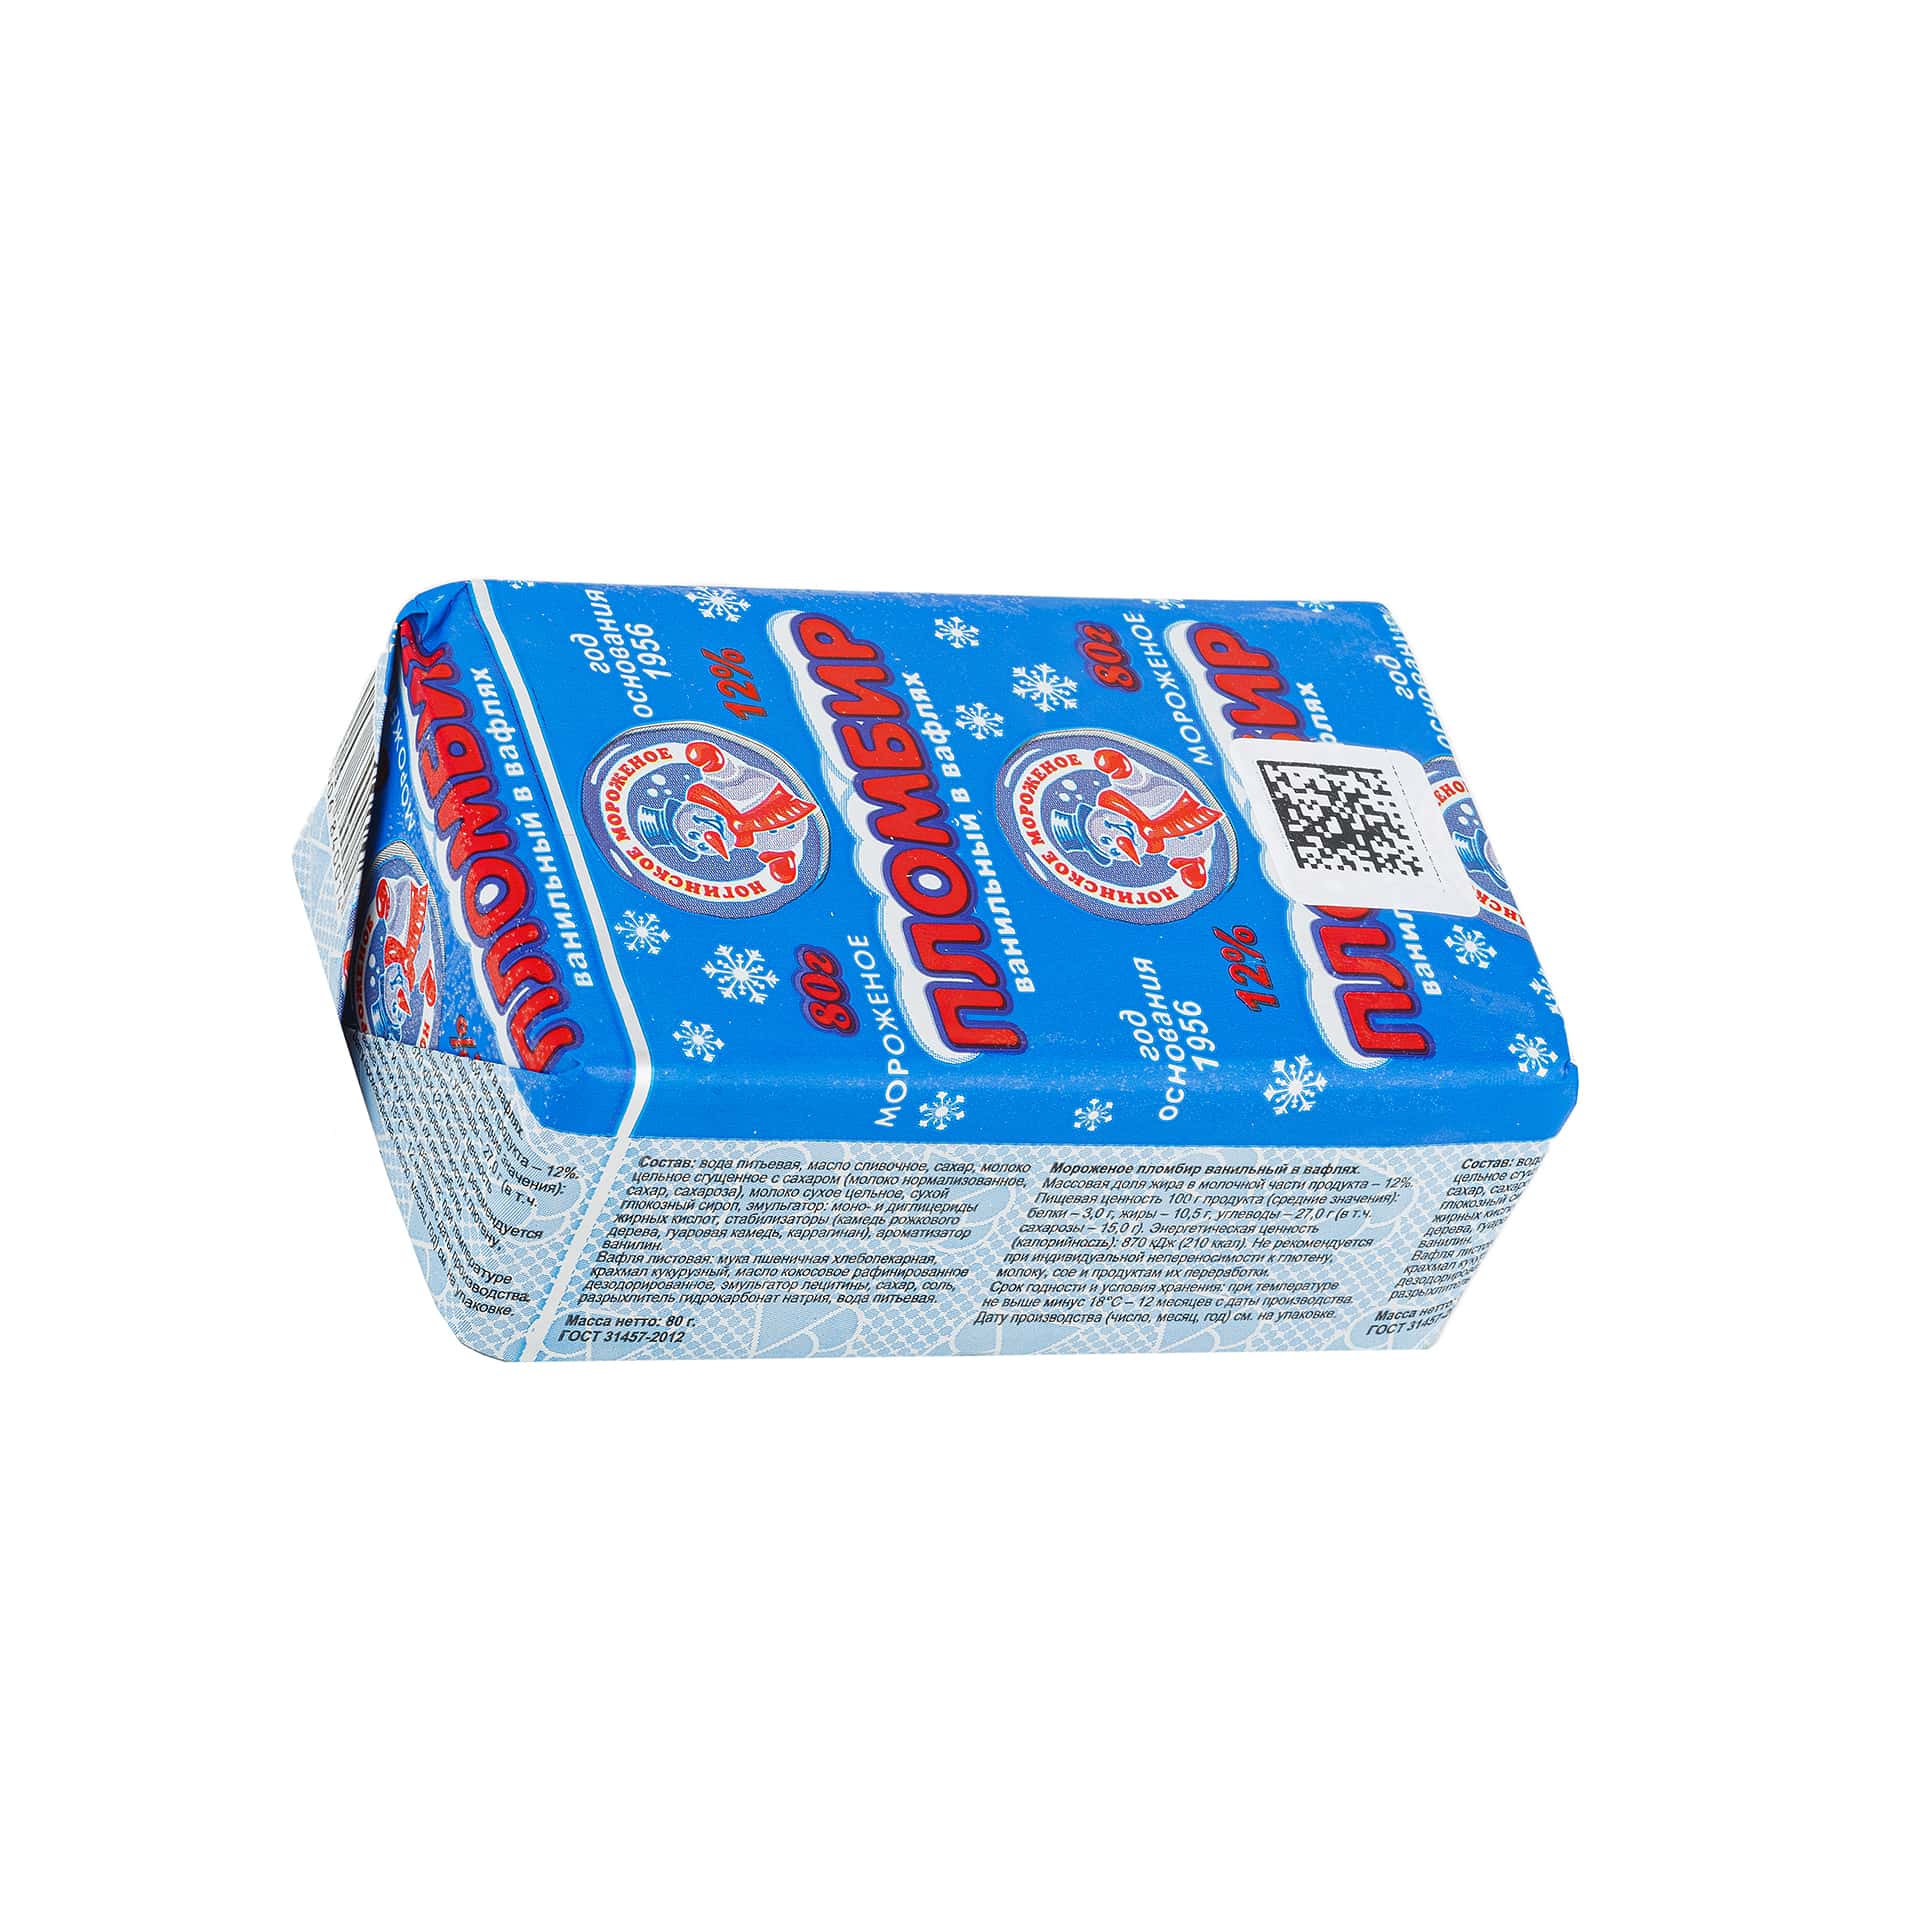 Мороженое пломбир брикет в вафлях Ногинское мороженое 80 г 433LED, общий вид, купить оптом с доставкой по москве и московской области, недорого, низкая цена